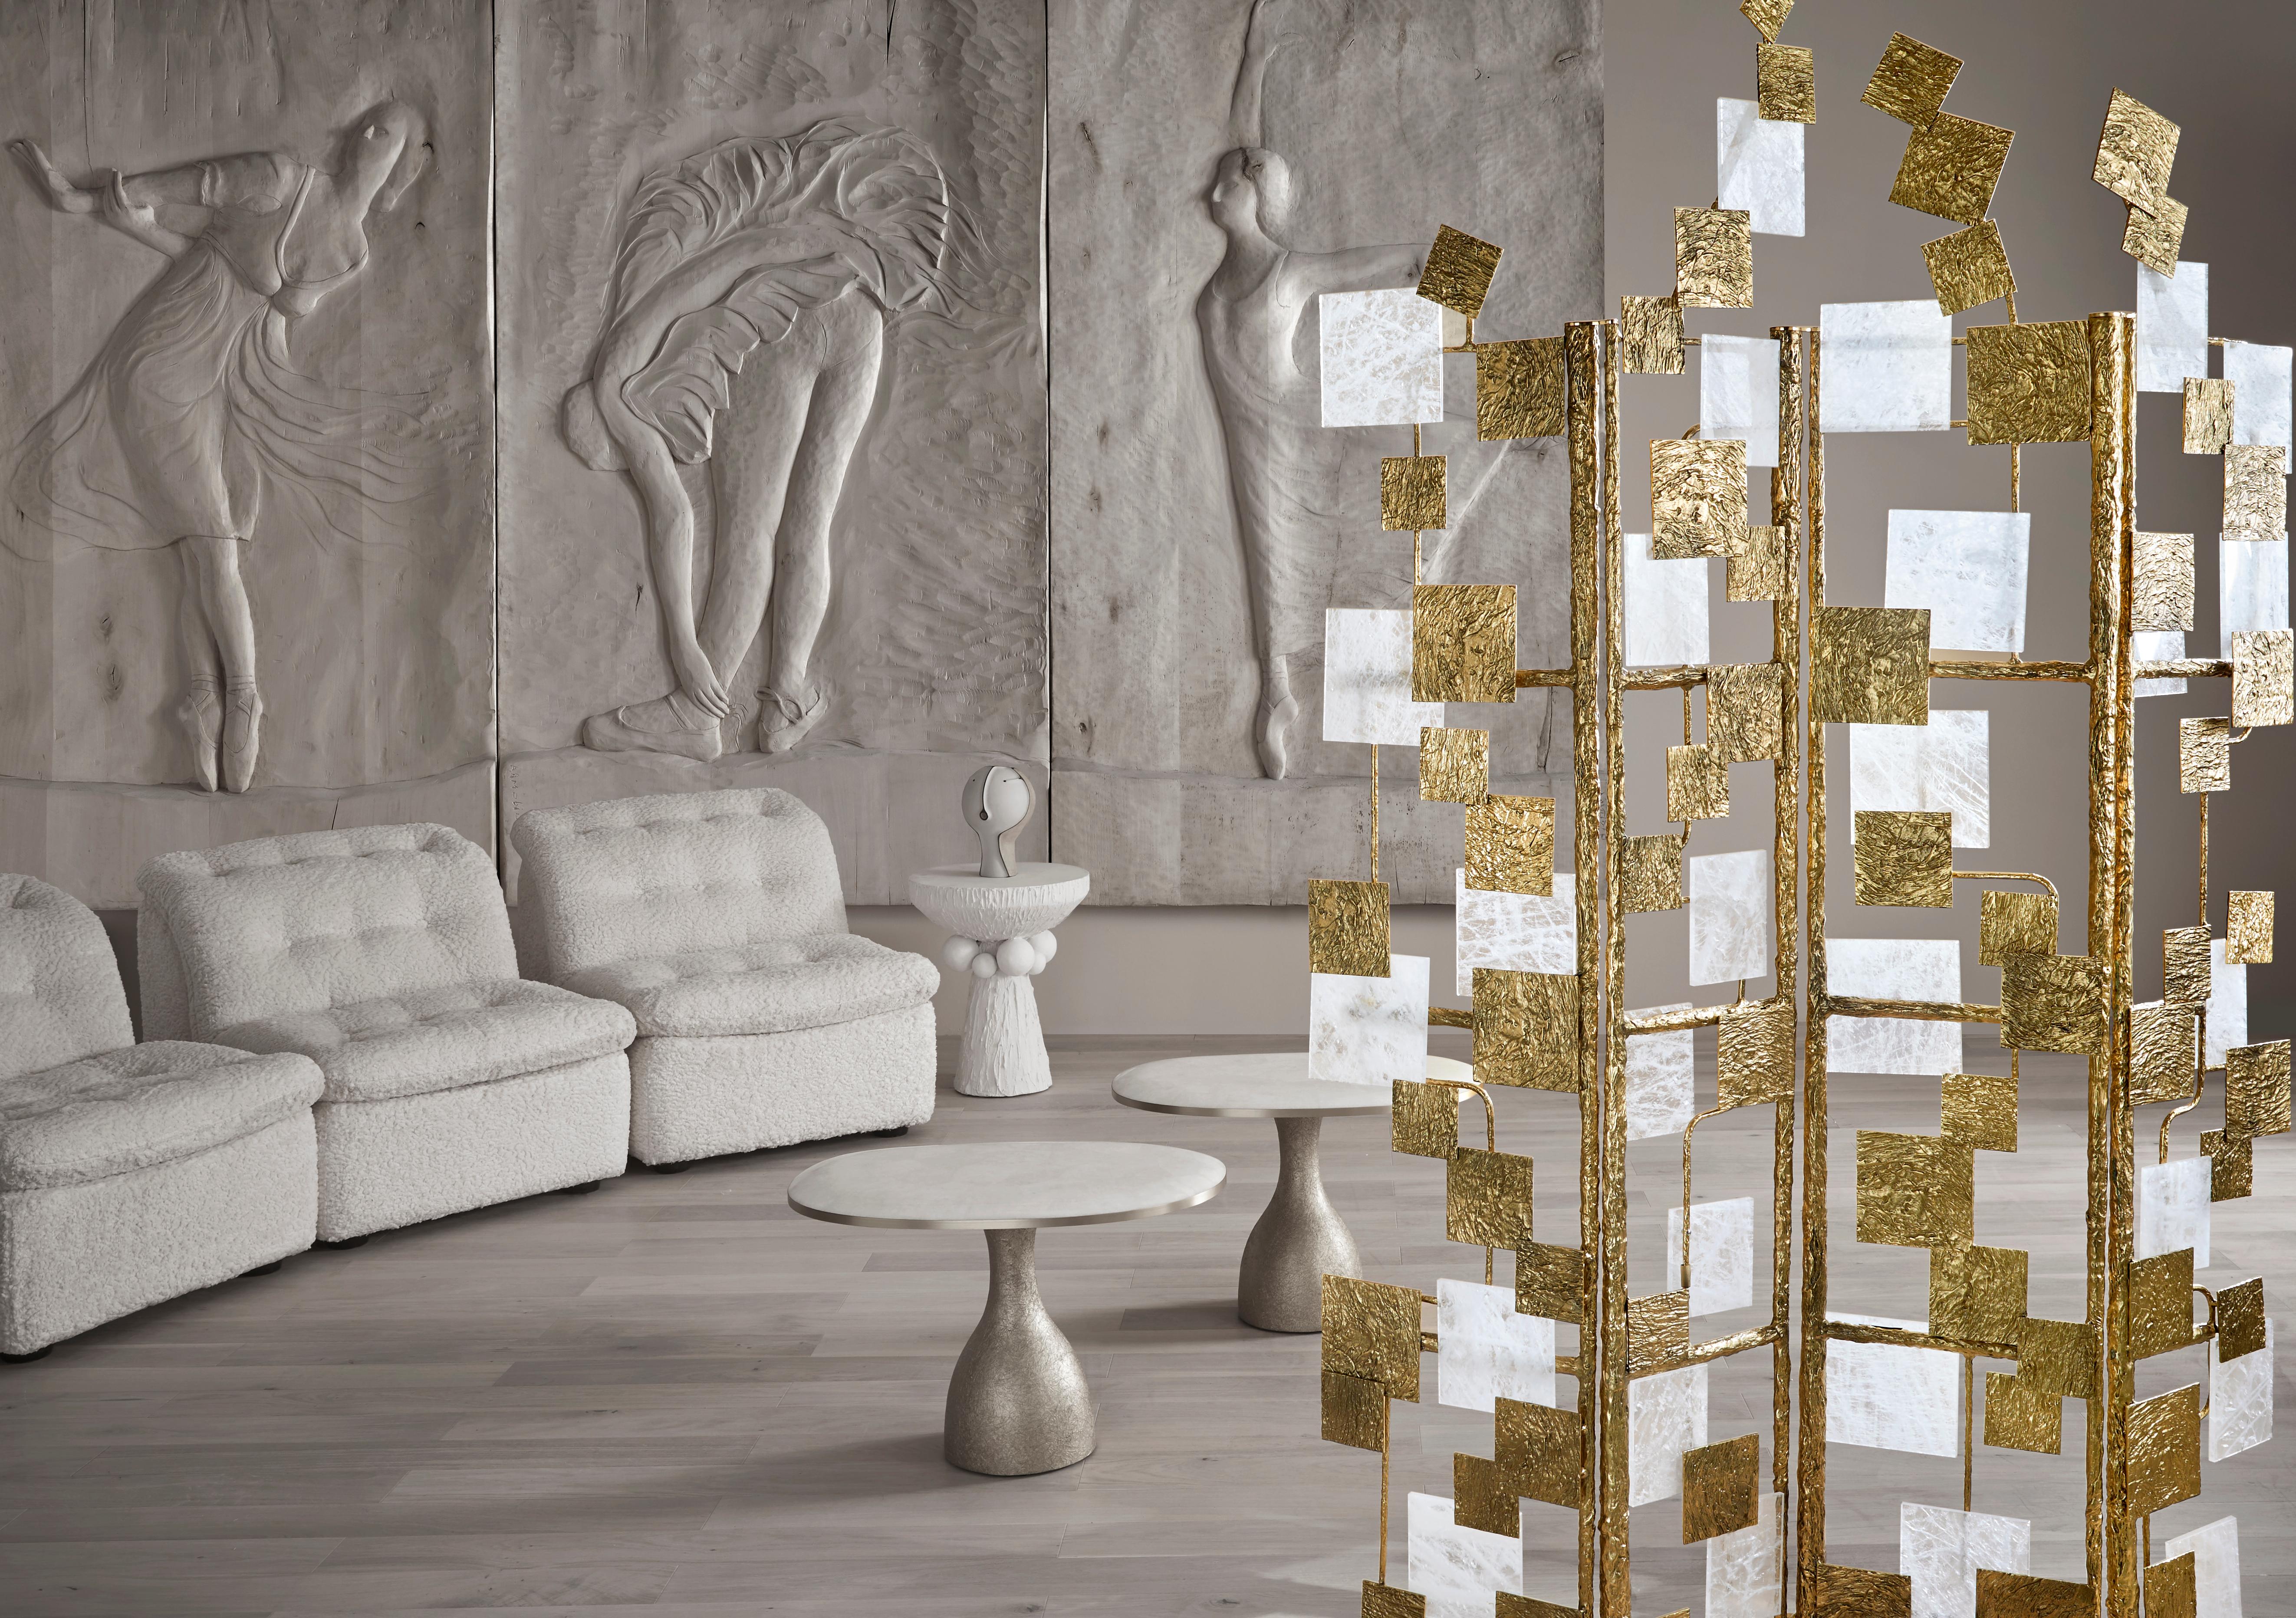 Atemberaubender „Louvre“-Raumteiler aus skulpturaler und patinierter Bronze und Bergkristall, bestehend aus 4 Teilen.
Entwurf von Studio Glustin.